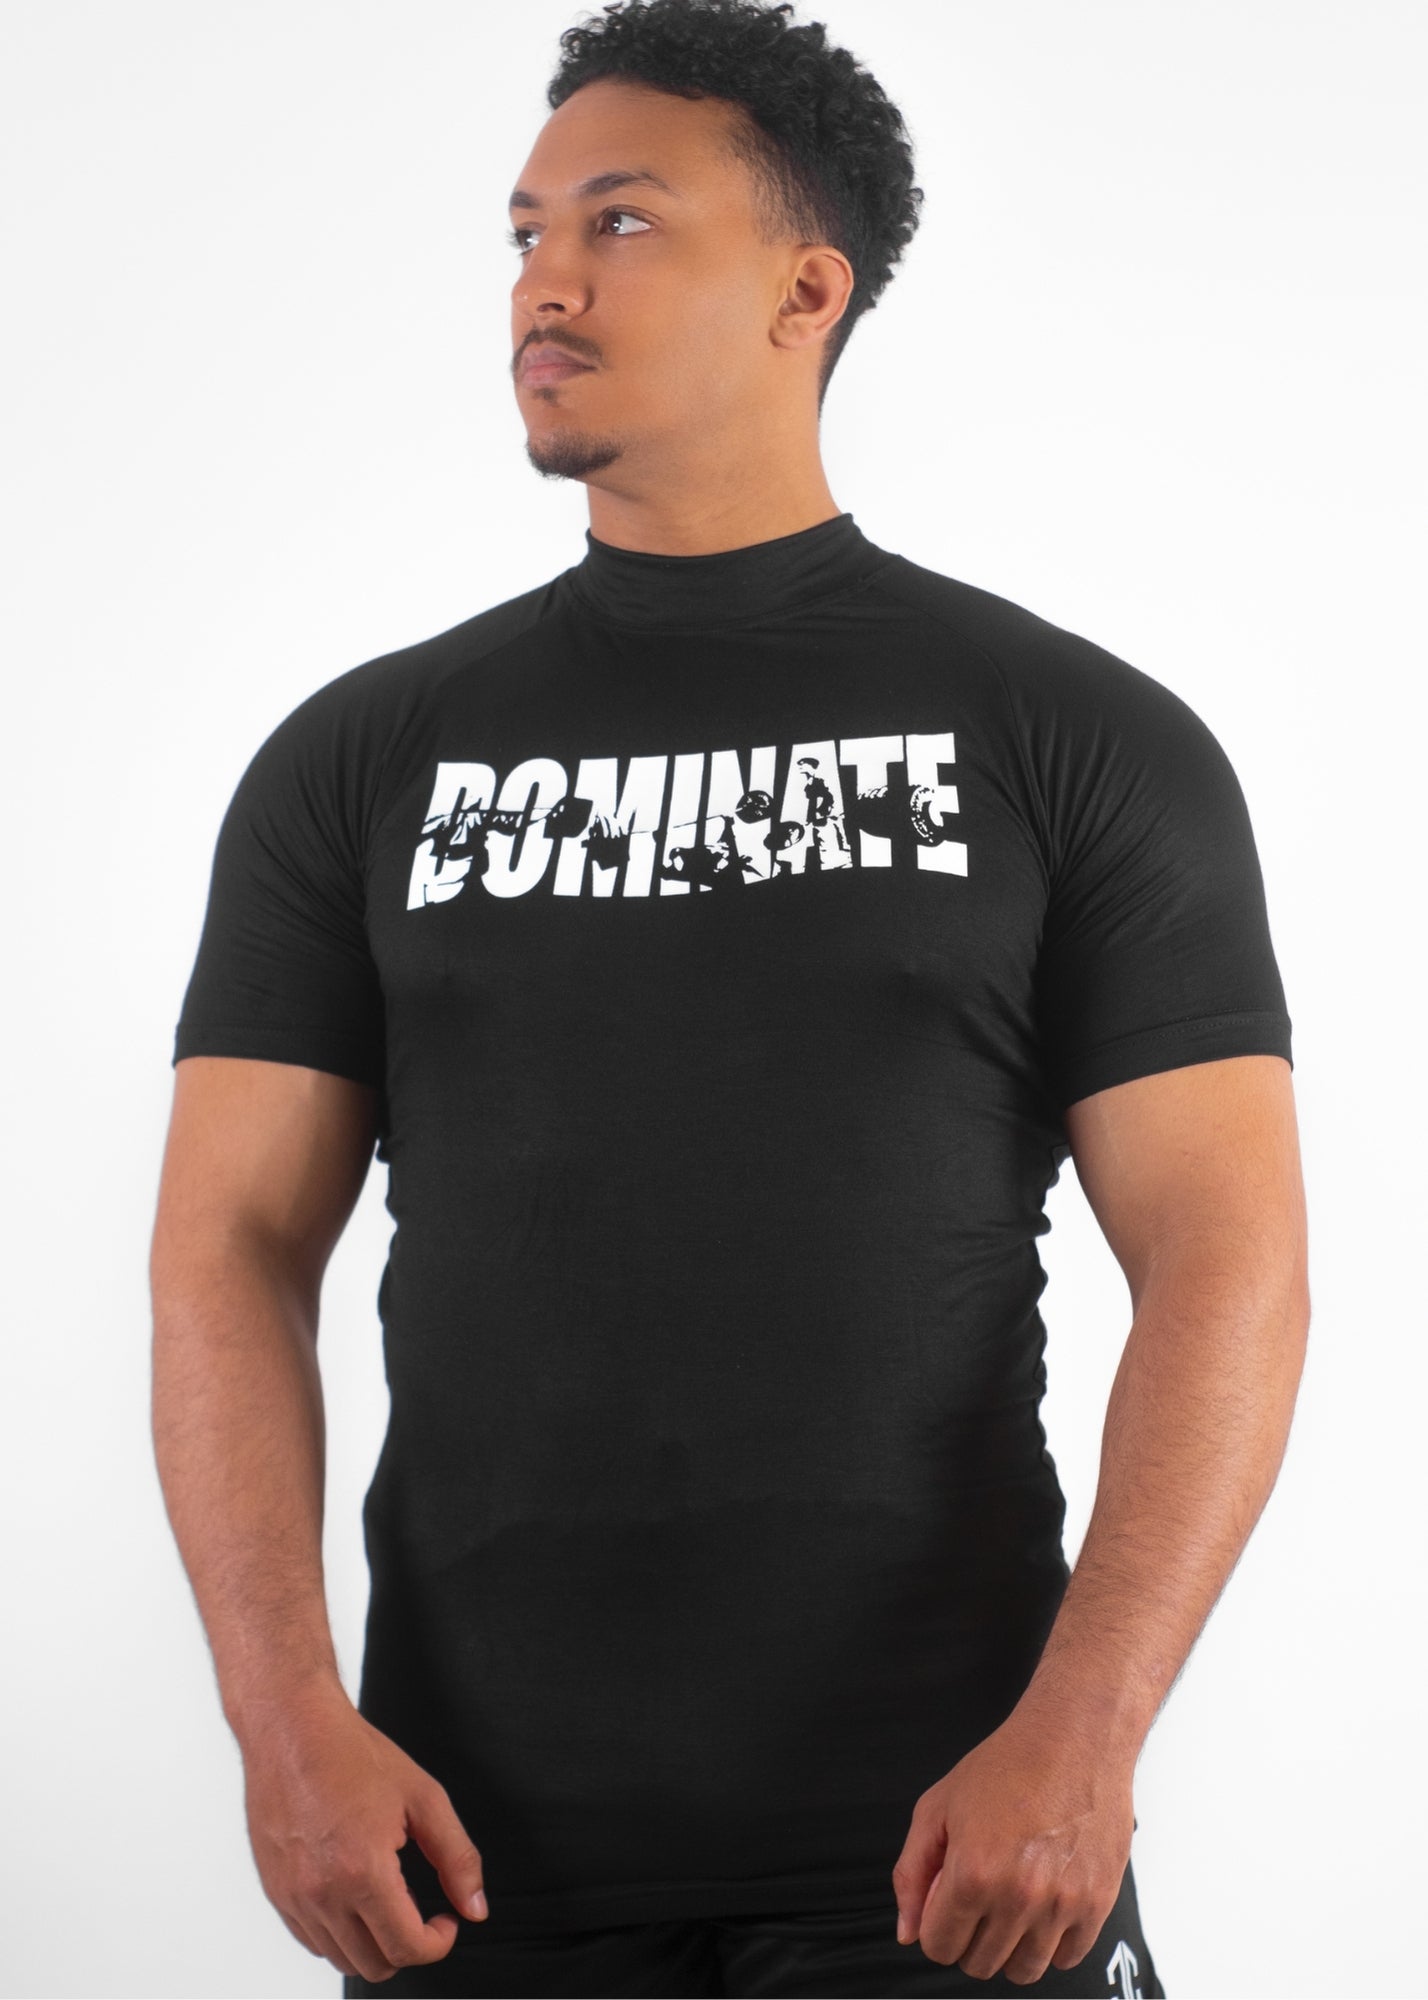 APEX™ Compression T-Shirt "DOMINATE" – NOIR